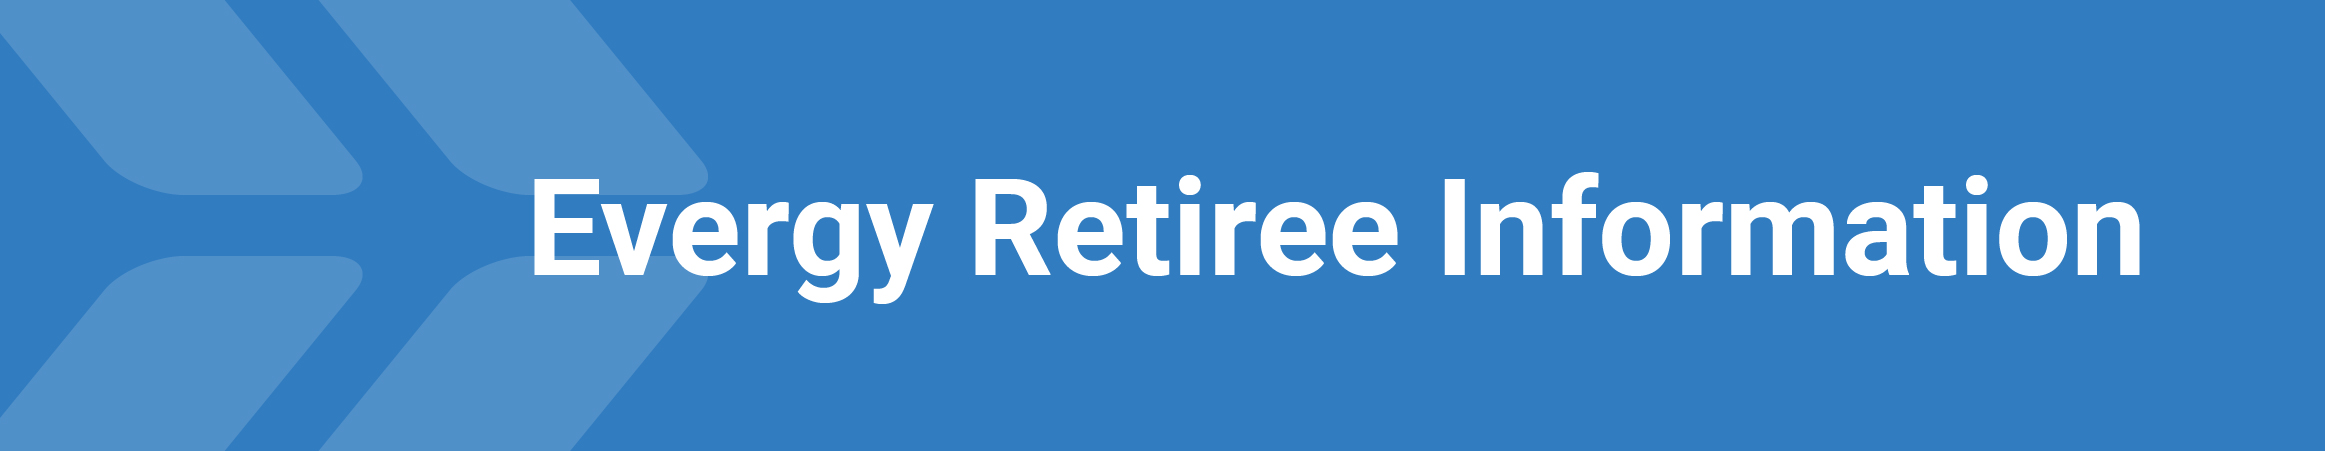 Get retiree information